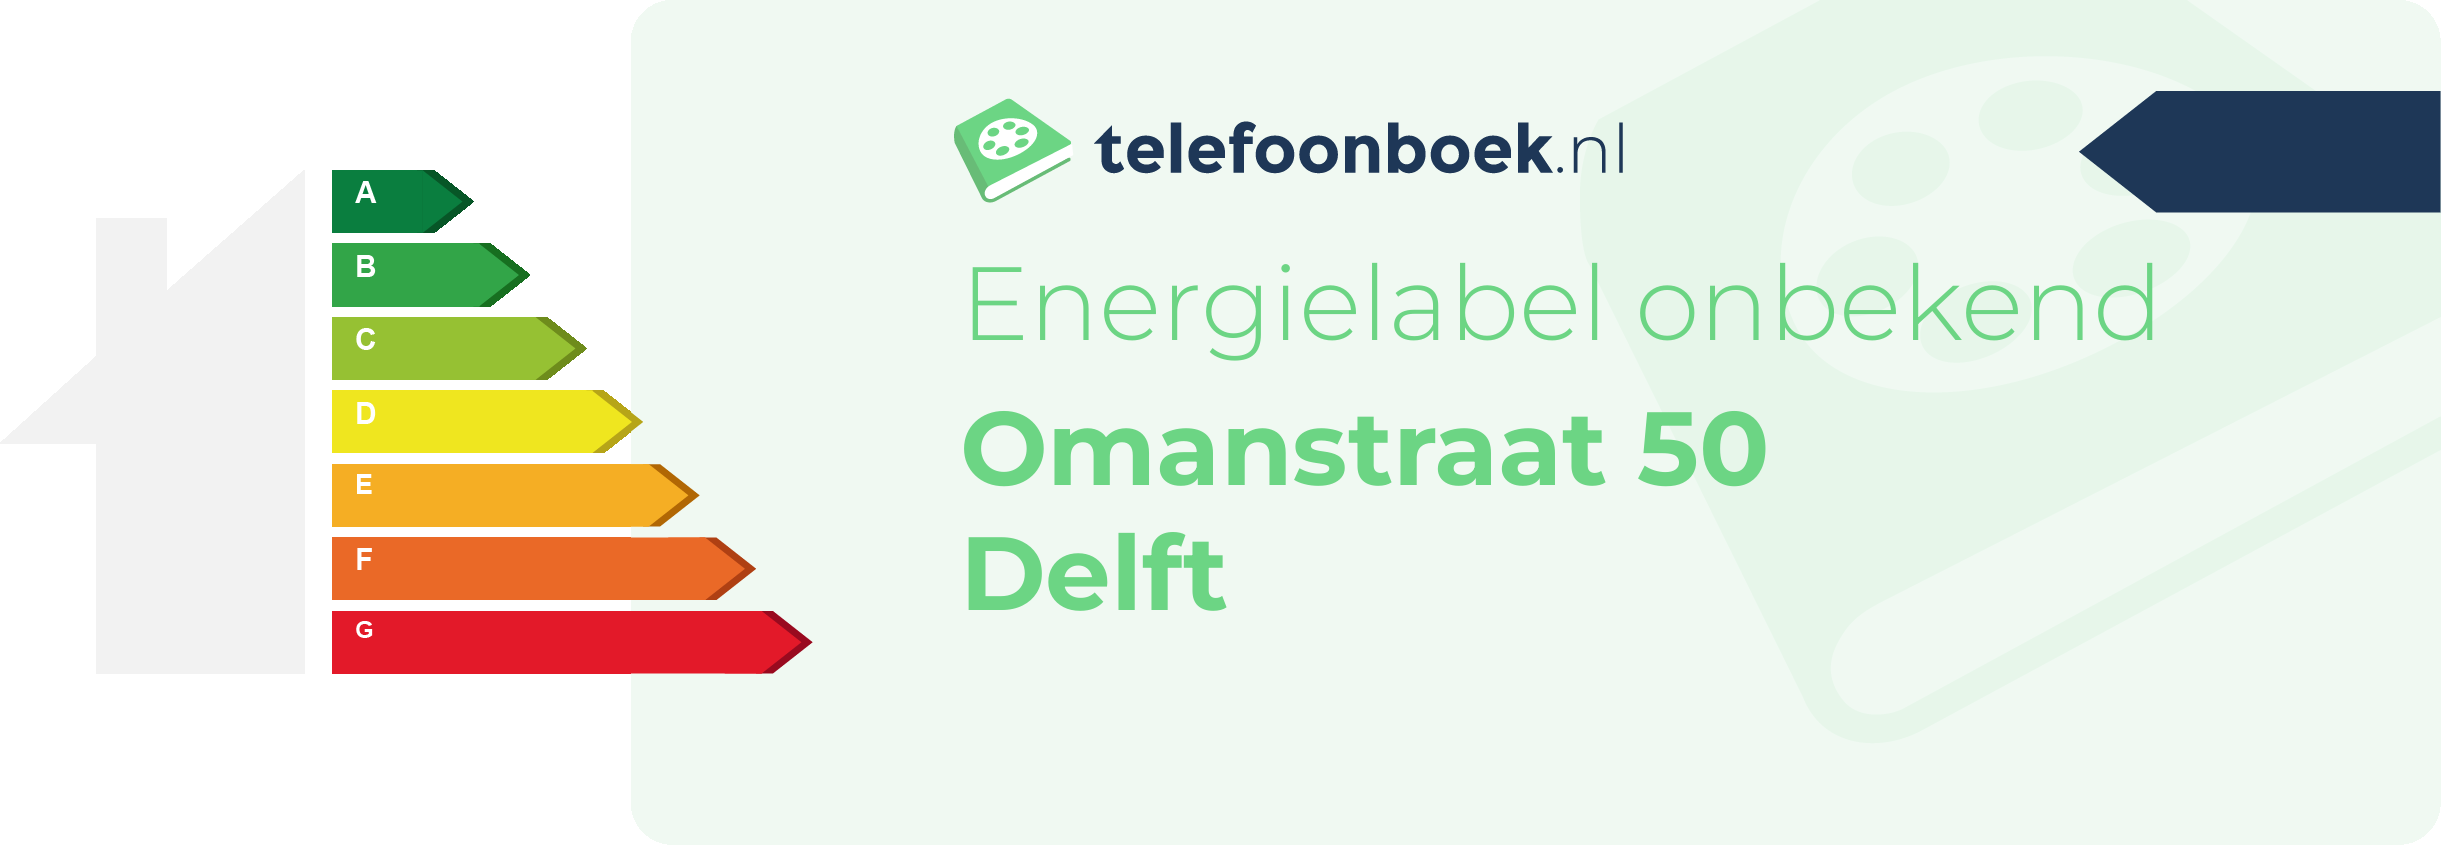 Energielabel Omanstraat 50 Delft